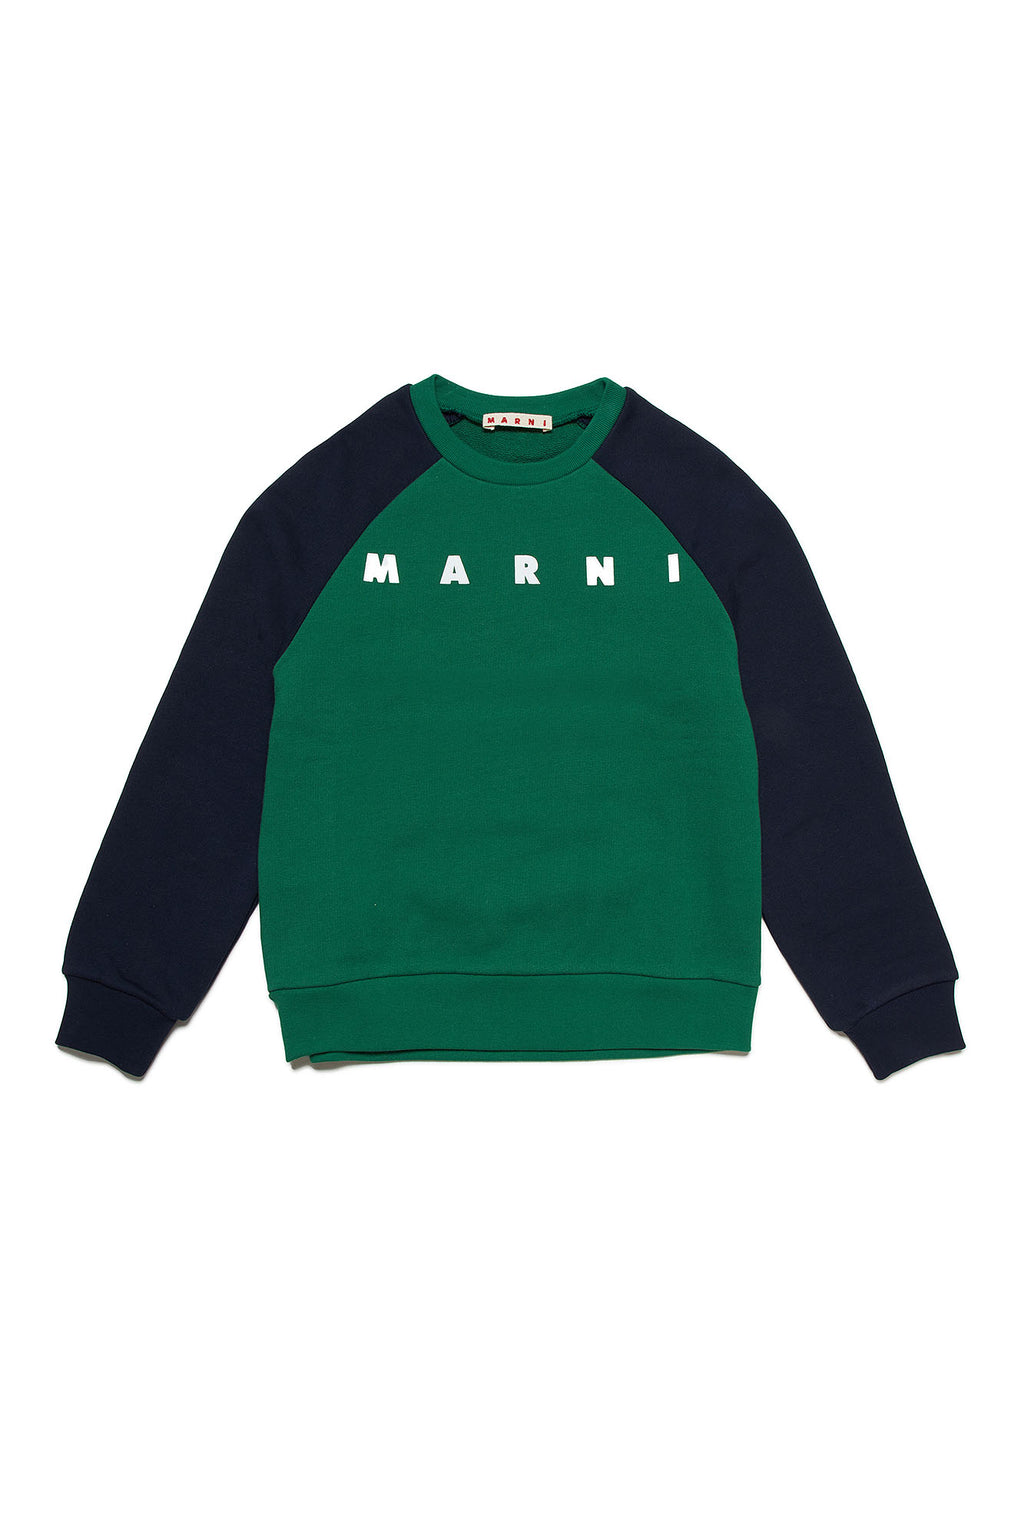 Marni Logo Sweatshirt - Green